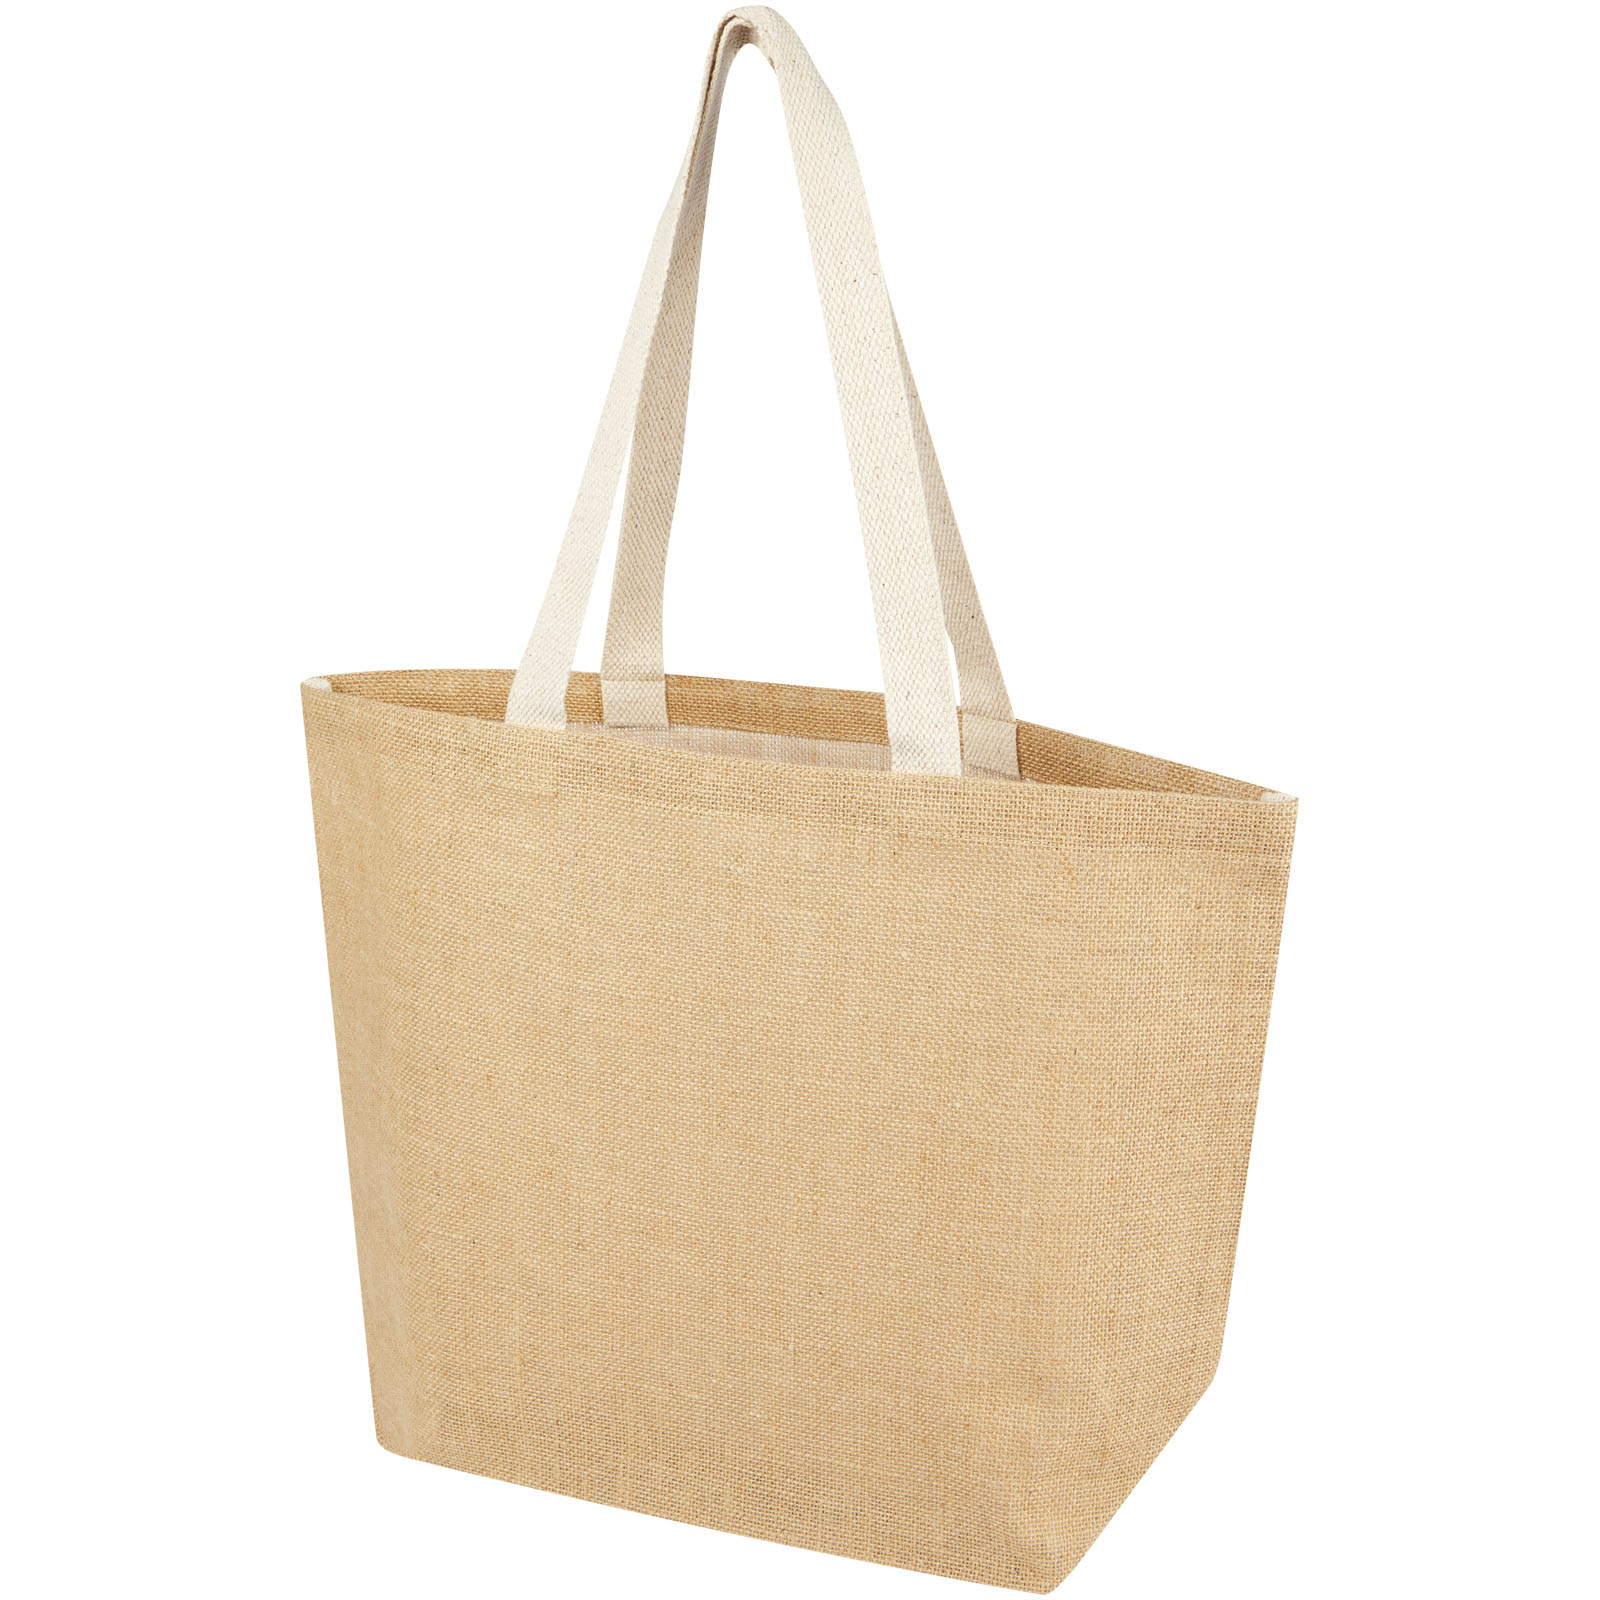 Shopping & Tote Bags - Juta 300 g/m² jute tote bag 12L